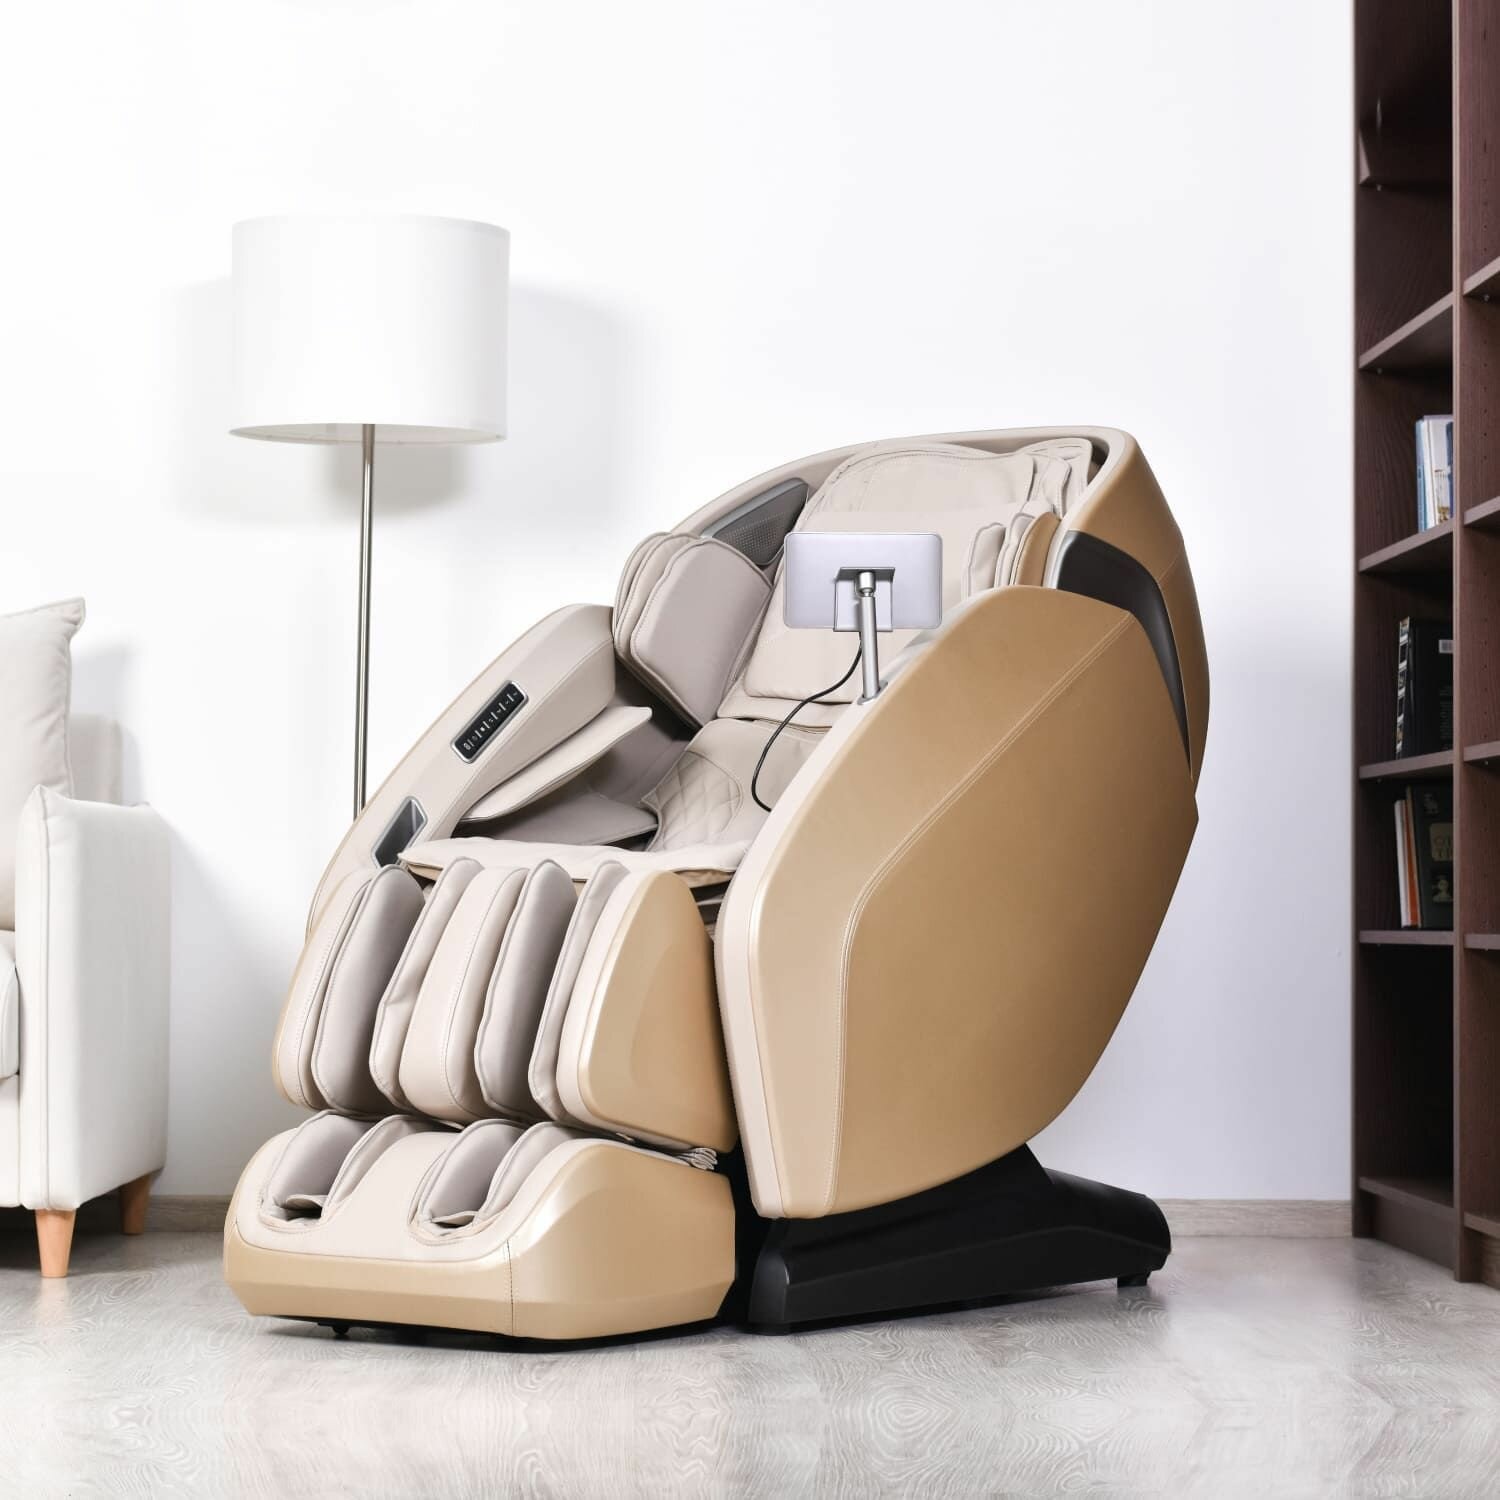 Массажное кресло GESS Oasis массажер для тела 3D массаж сканирование 11 автопрограмм